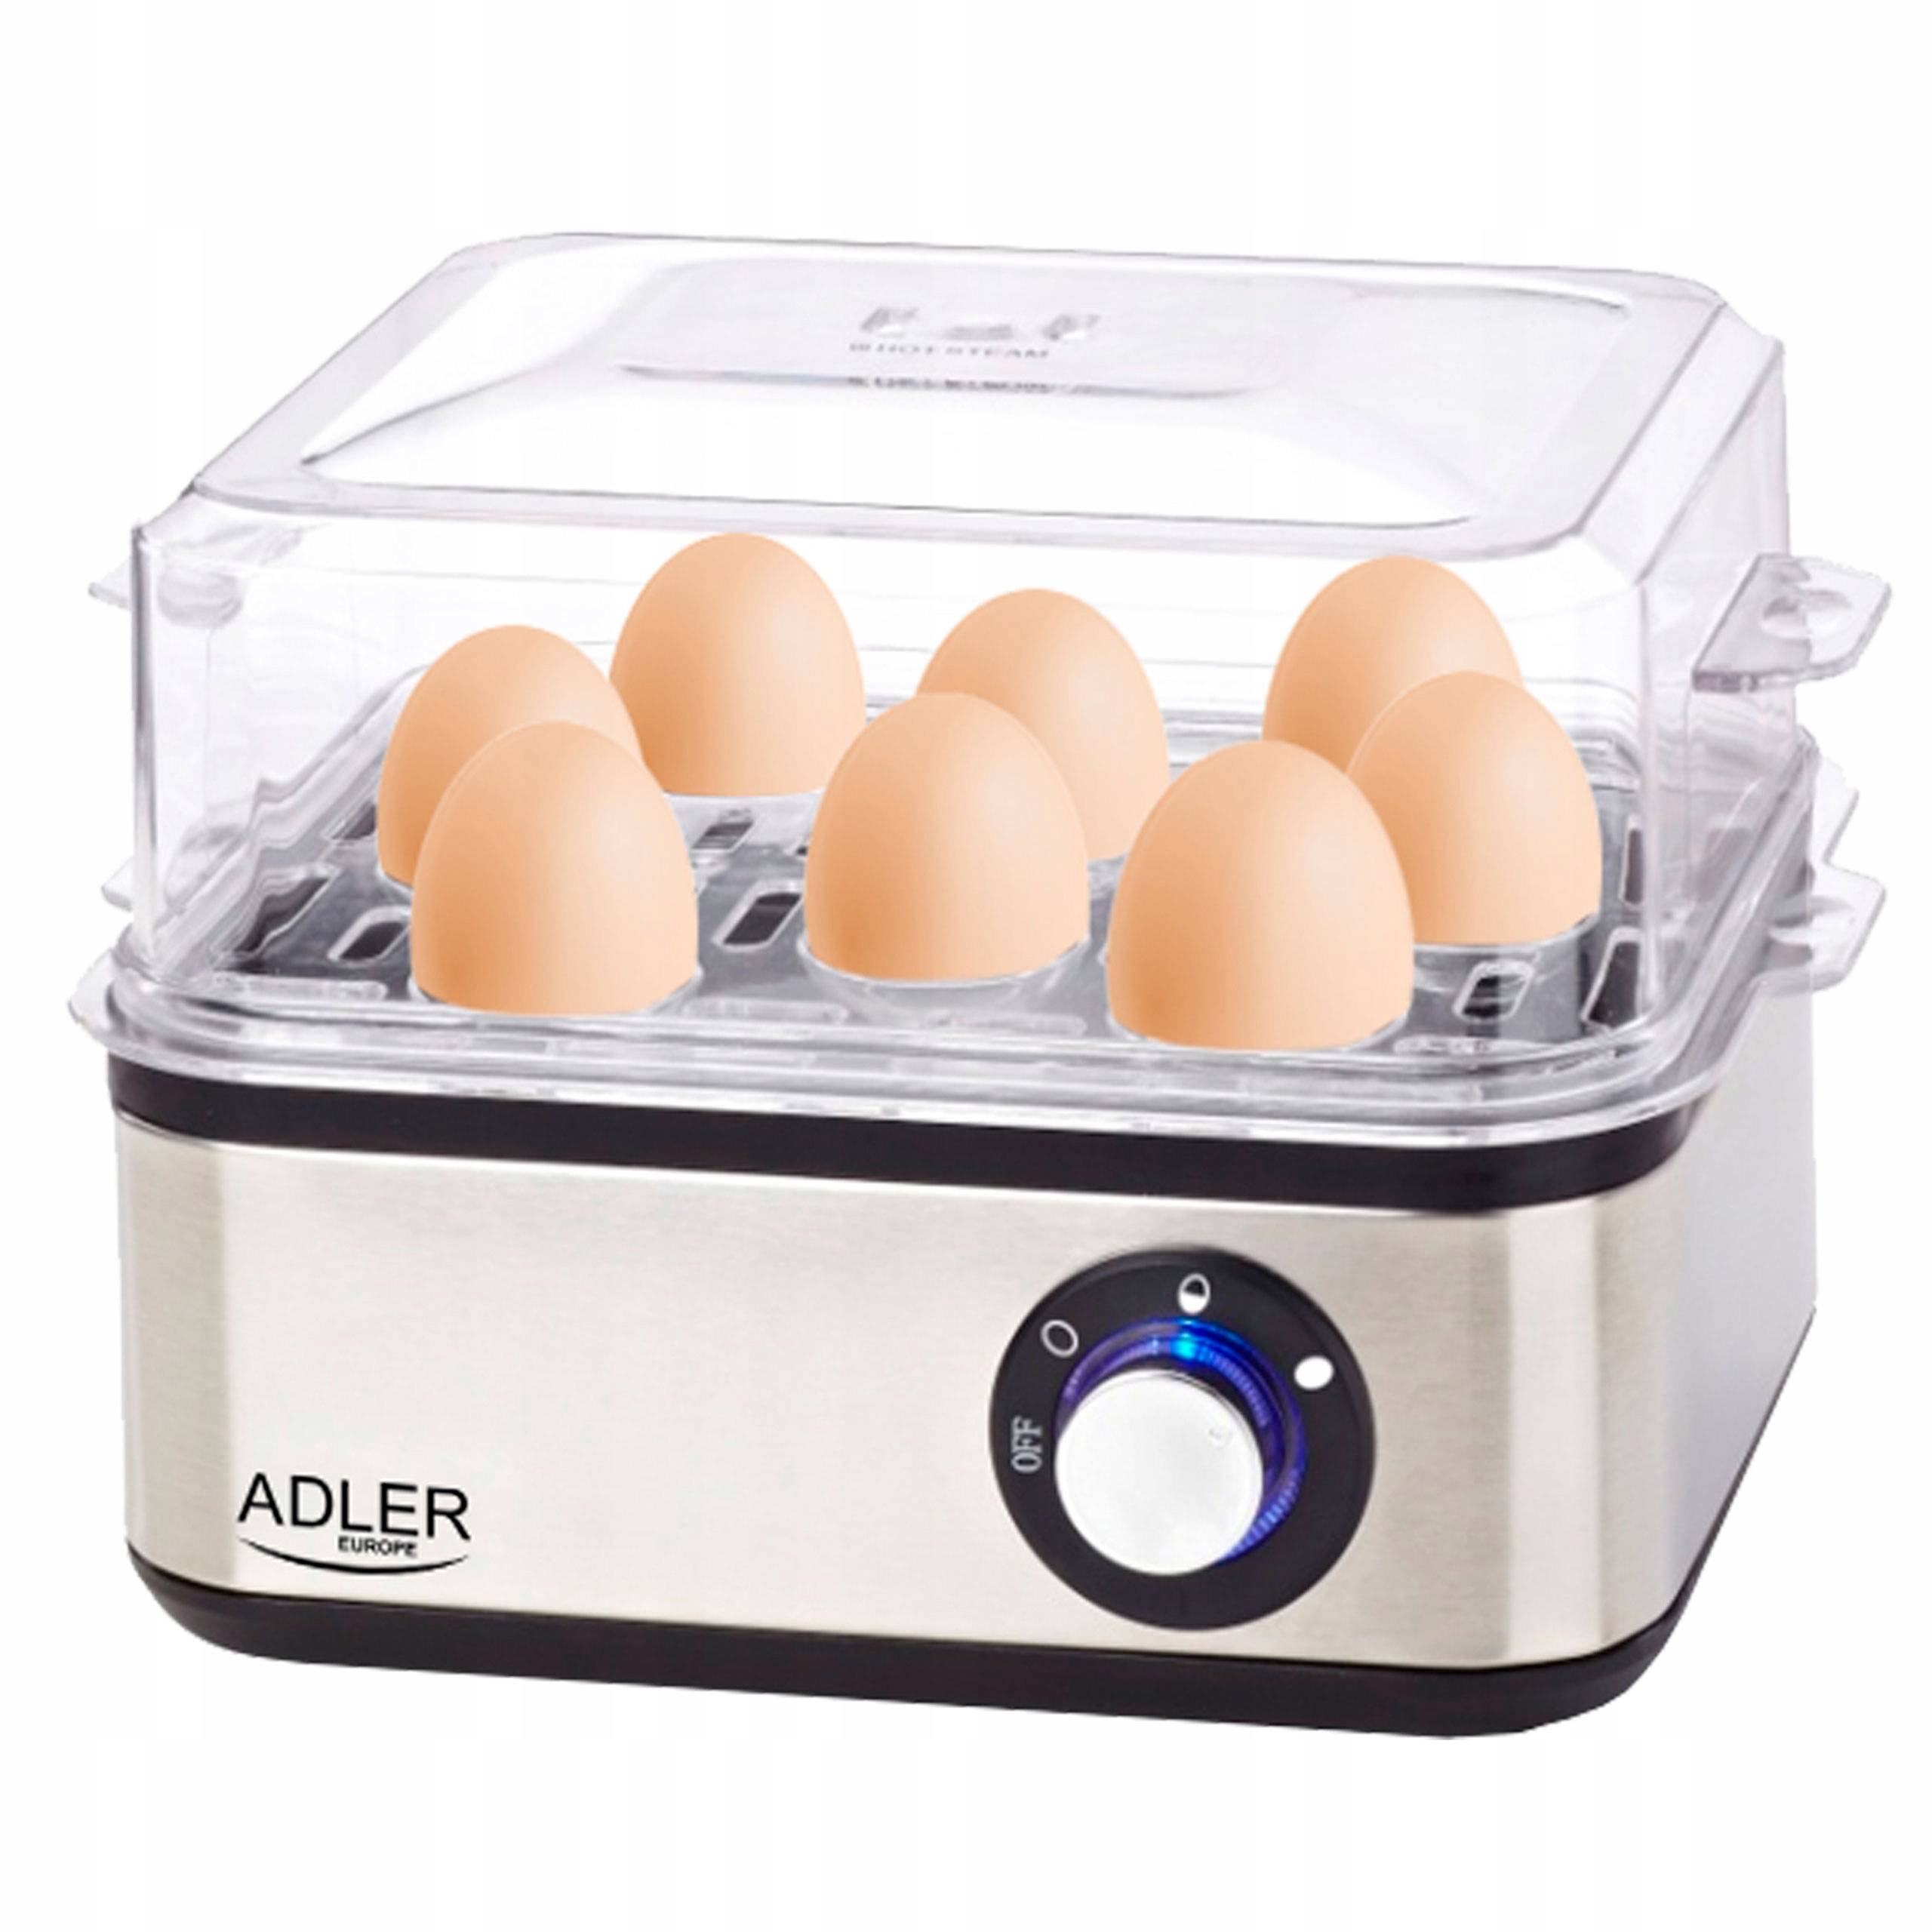 Просто и быстро – варим яйца с лучшими яйцеварками по отзывам покупателей | блог comfy